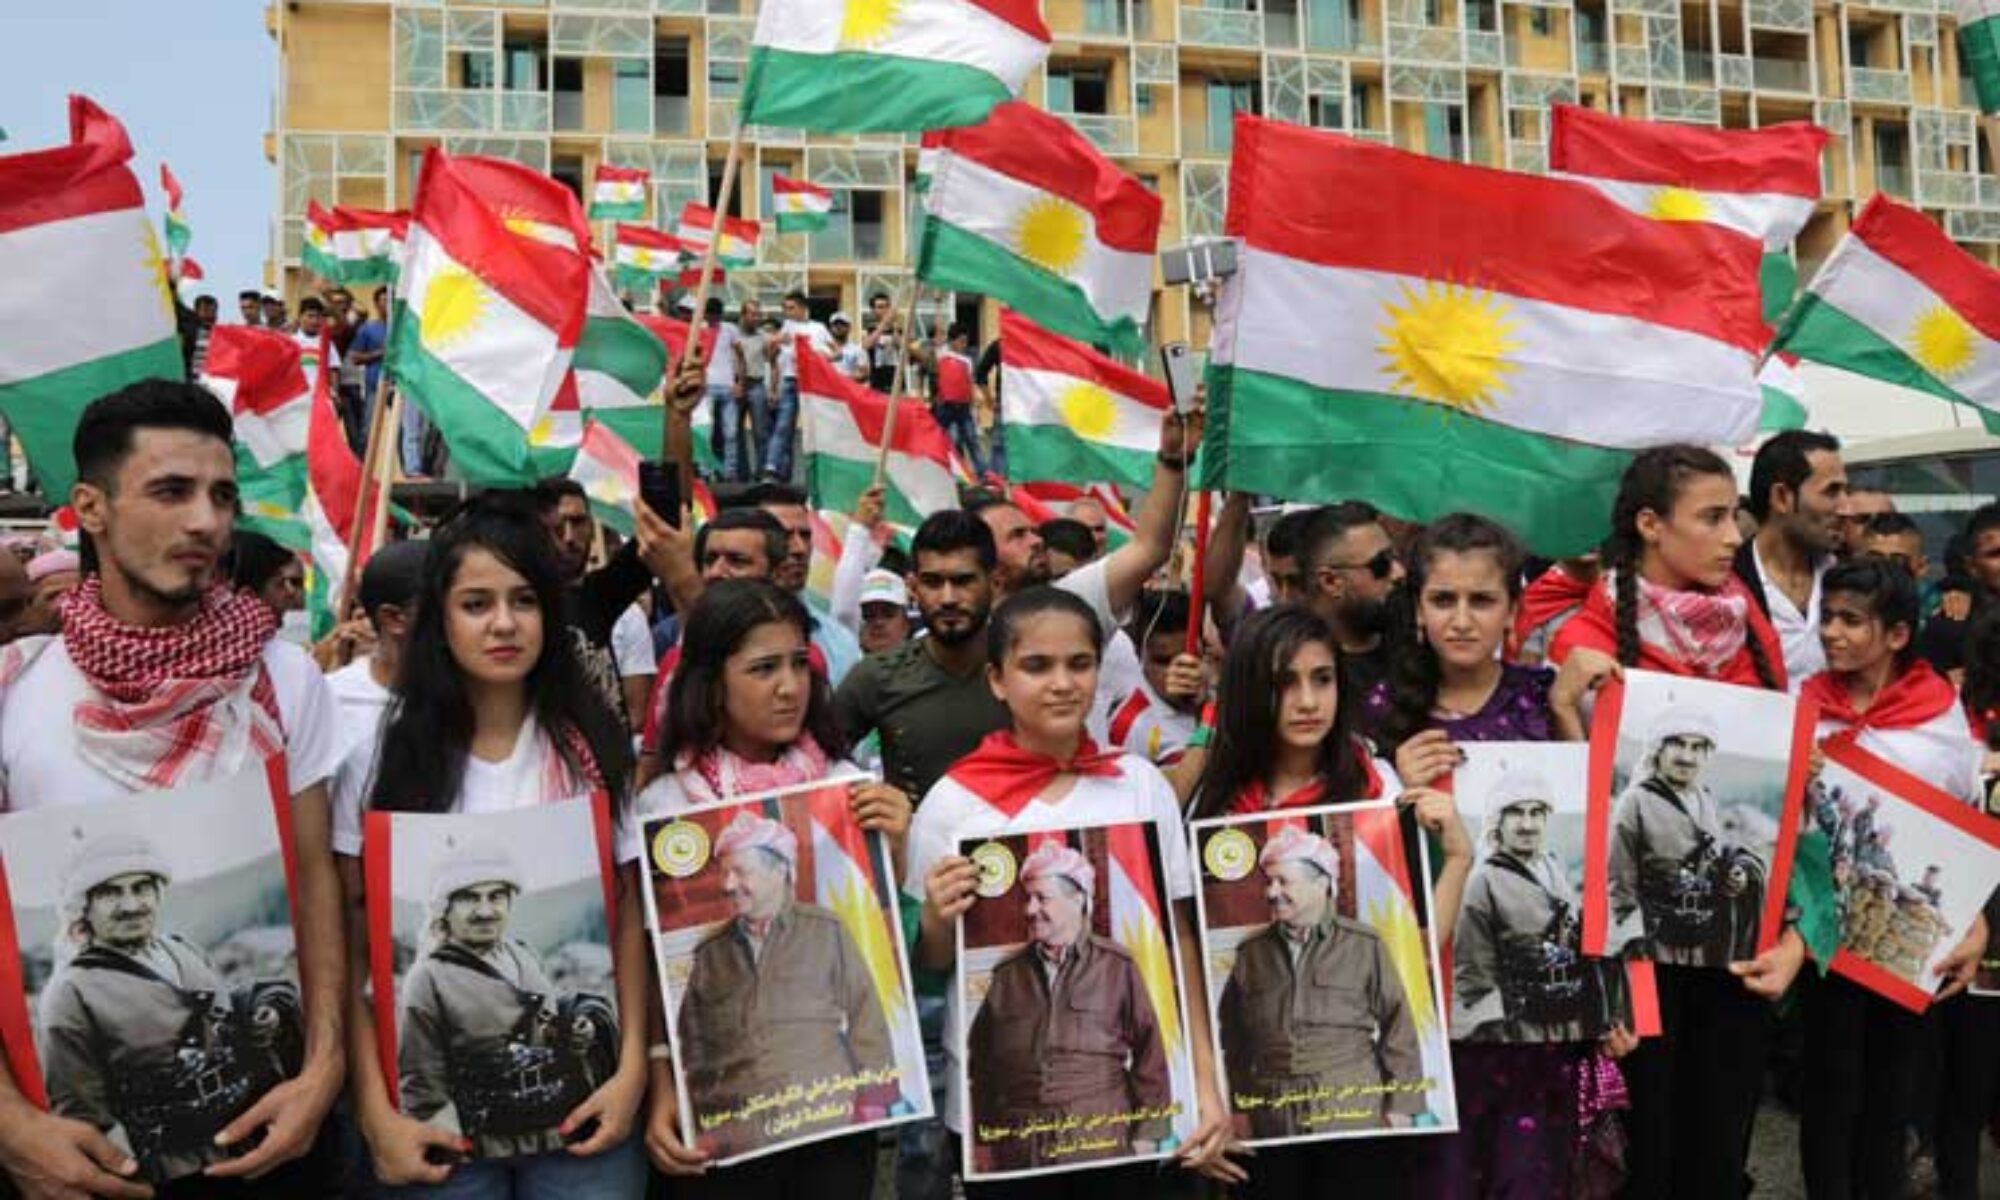 Bugün, Kürdistan Bölgesi siyasi iradesinin 'bağımsızlık referandumu' kararı almasının bugün yıldönümü